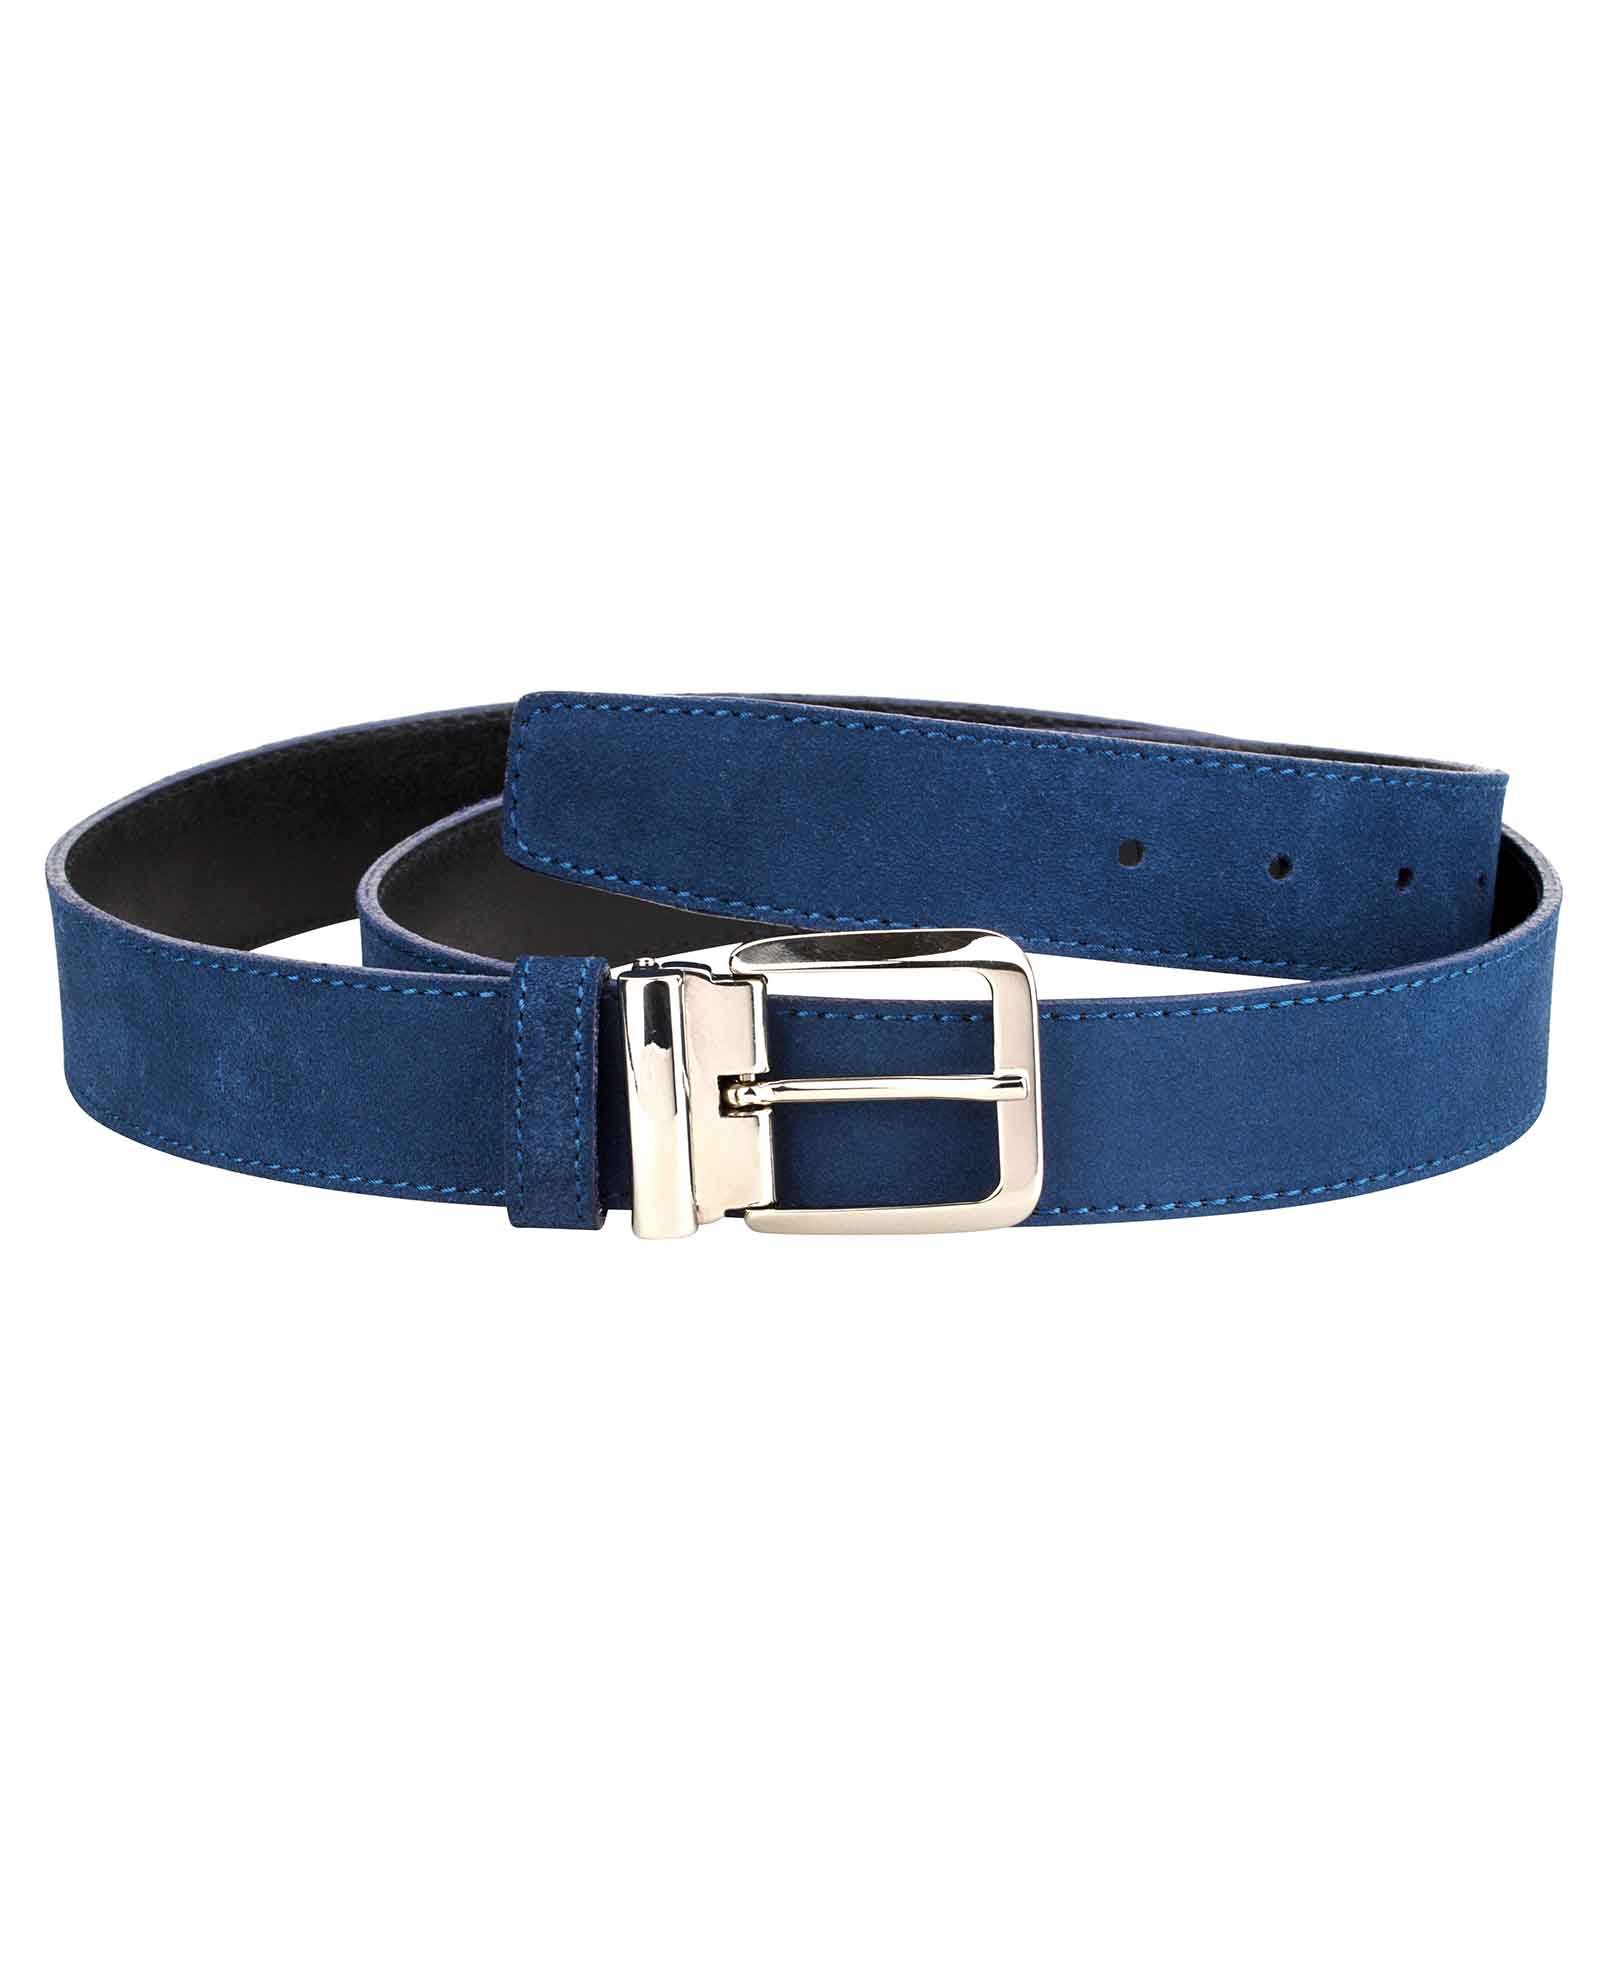 Buy Blue Suede Belt For Men - LeatherBeltsOnline.com - Free Shipping